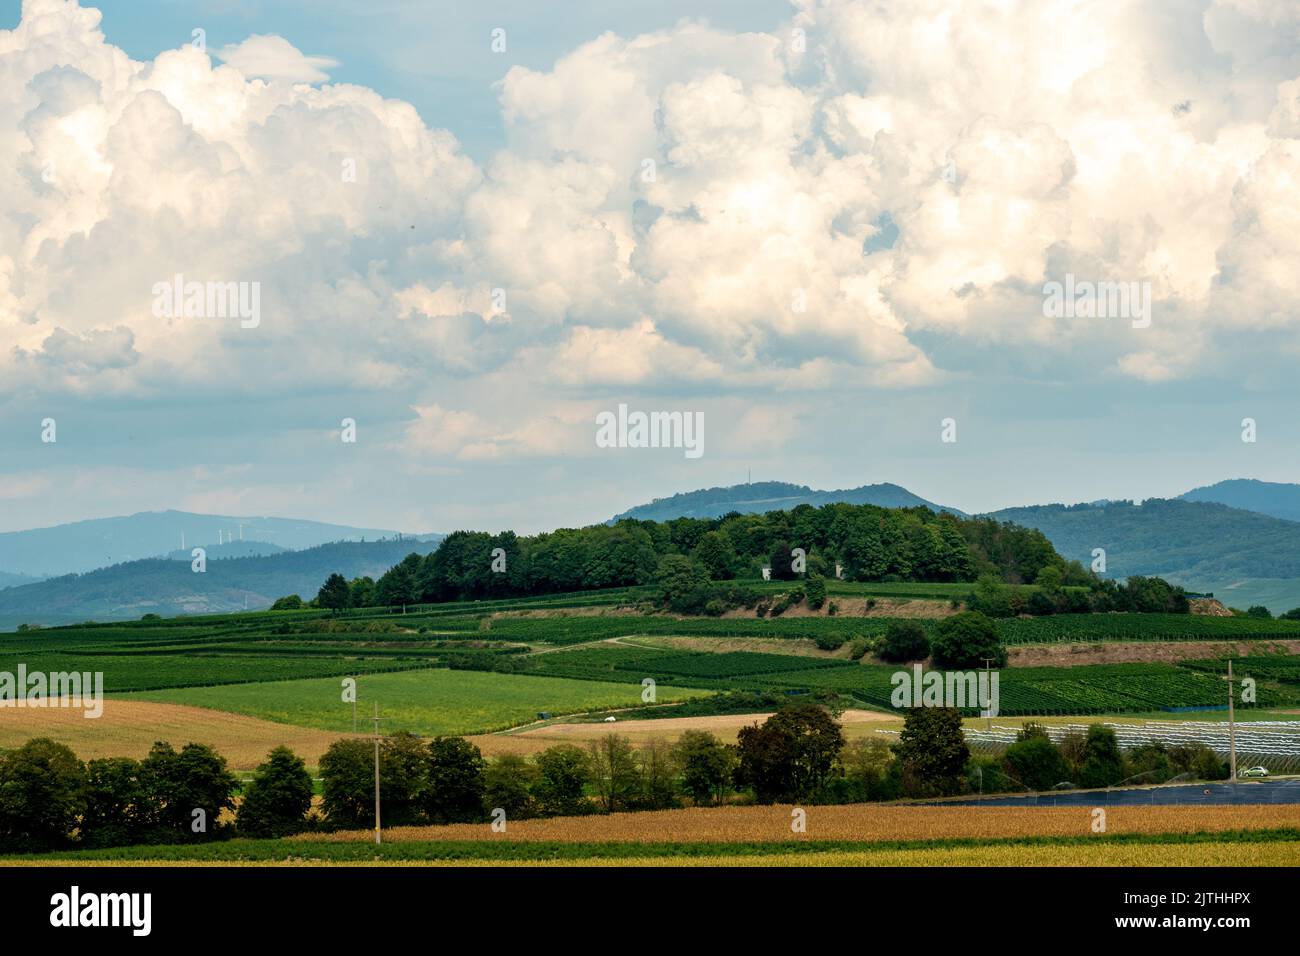 View towards Rebberg in Bad Krozingen, Germany Stock Photo